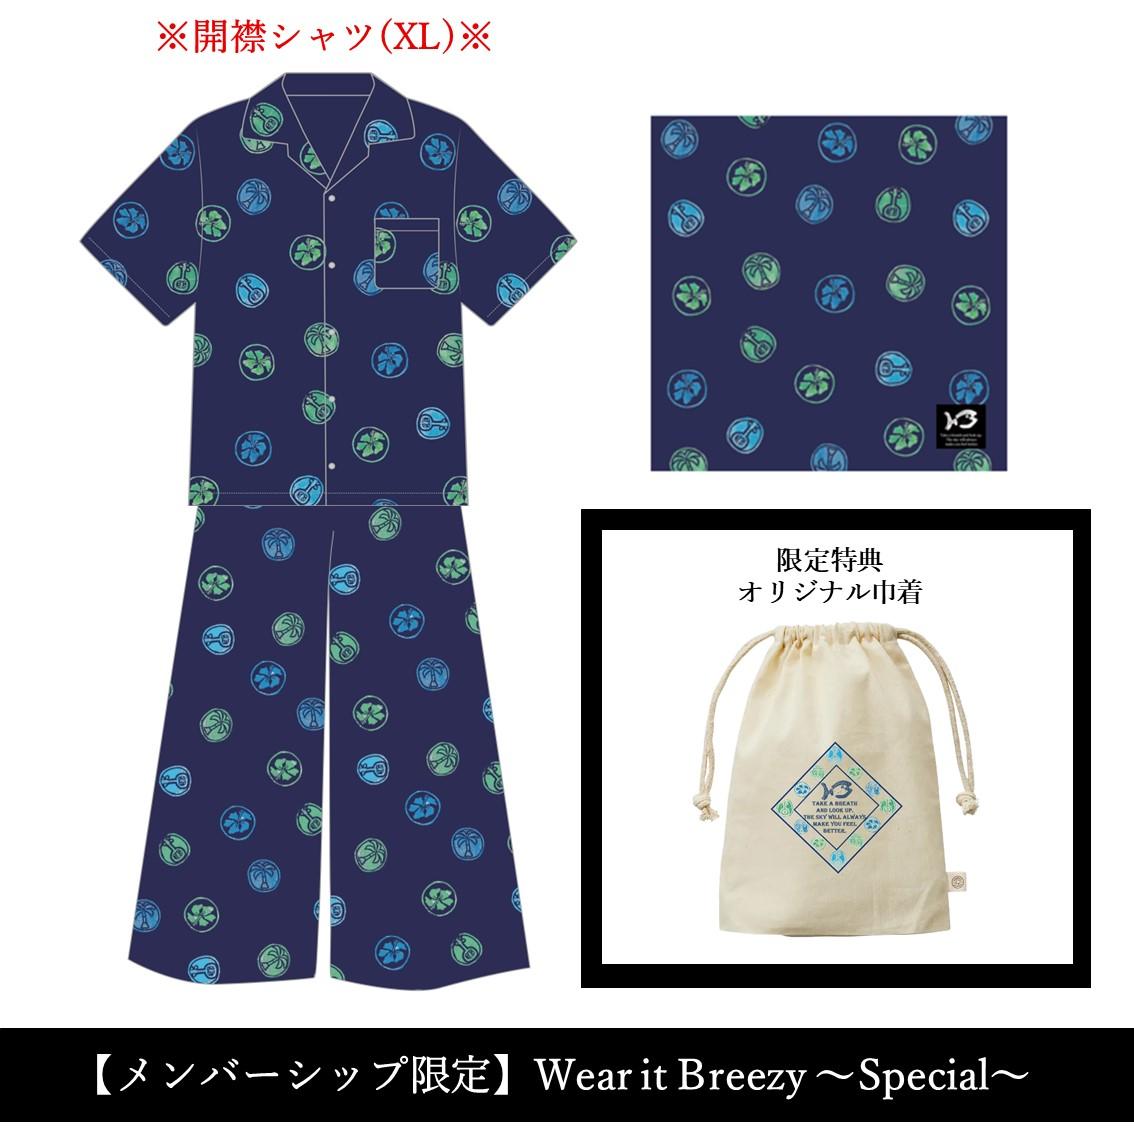 【メンバーシップ限定】Wear it Breezy ～Special～(シャツXL)